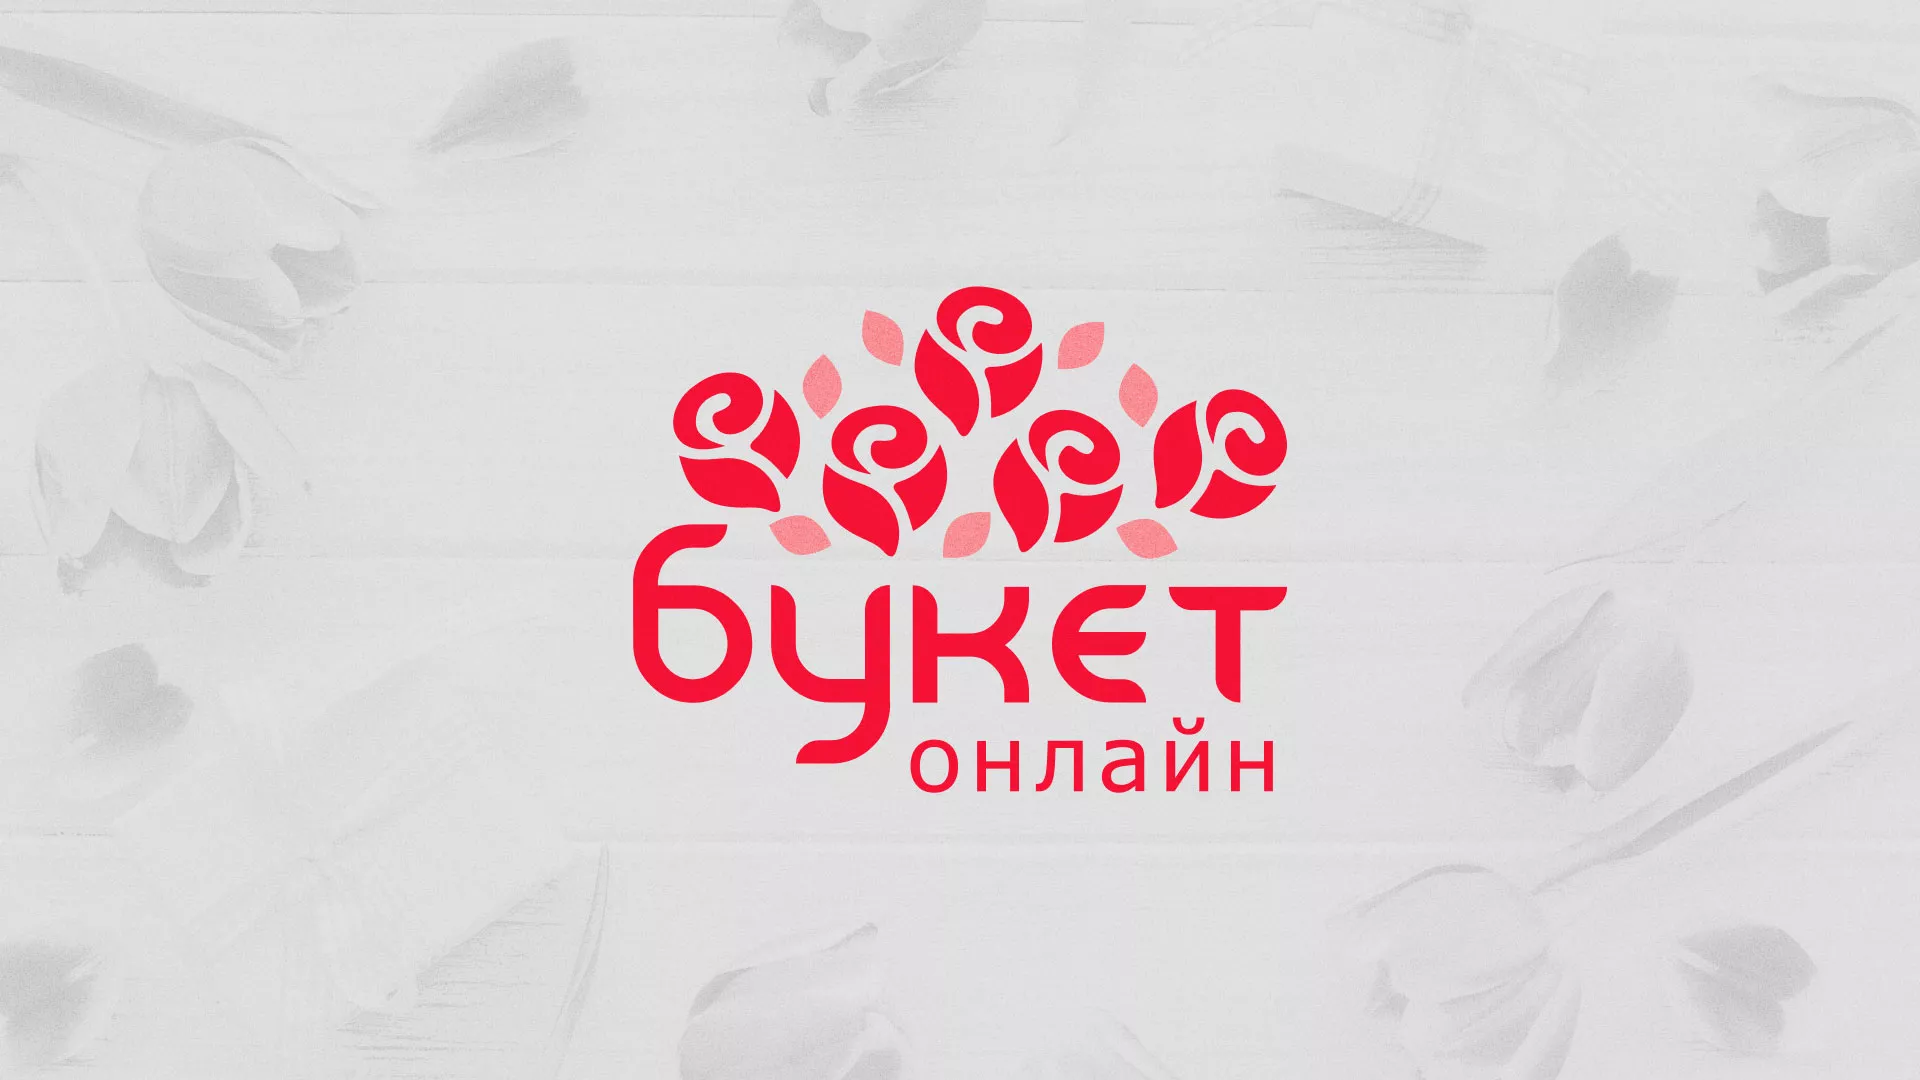 Создание интернет-магазина «Букет-онлайн» по цветам в Бабаево